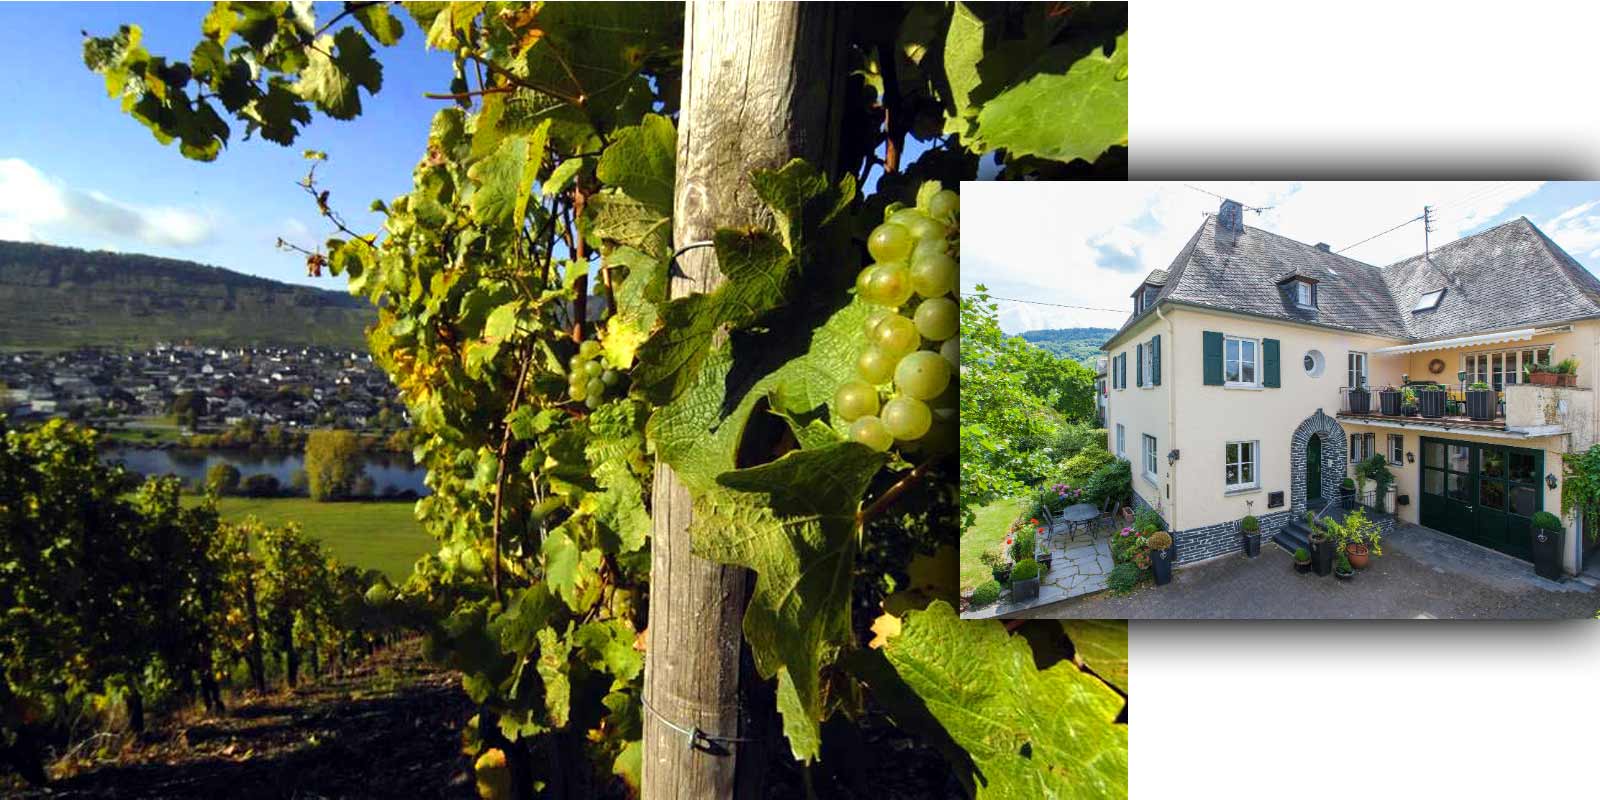 Grans-Fassian viinitila - Moselin viininviljelyalue Gerhard Grans otti viininviljelyyrityksen haltuunsa isaltaan Mattiakselta vuonna 1982 ja laajensi 4 hehtaarin viinitarhan nykyiseksi 9,5 hehtaariksi, josta 88 % on Rieslingia, 10 % Pinot Blanc ja 2 % Pinot Gris. Viinitilan parhaat paikat ovat myos luokiteltuja paikkoja ? ne luokitellaan korkeimpaan viljelyluokkaan.